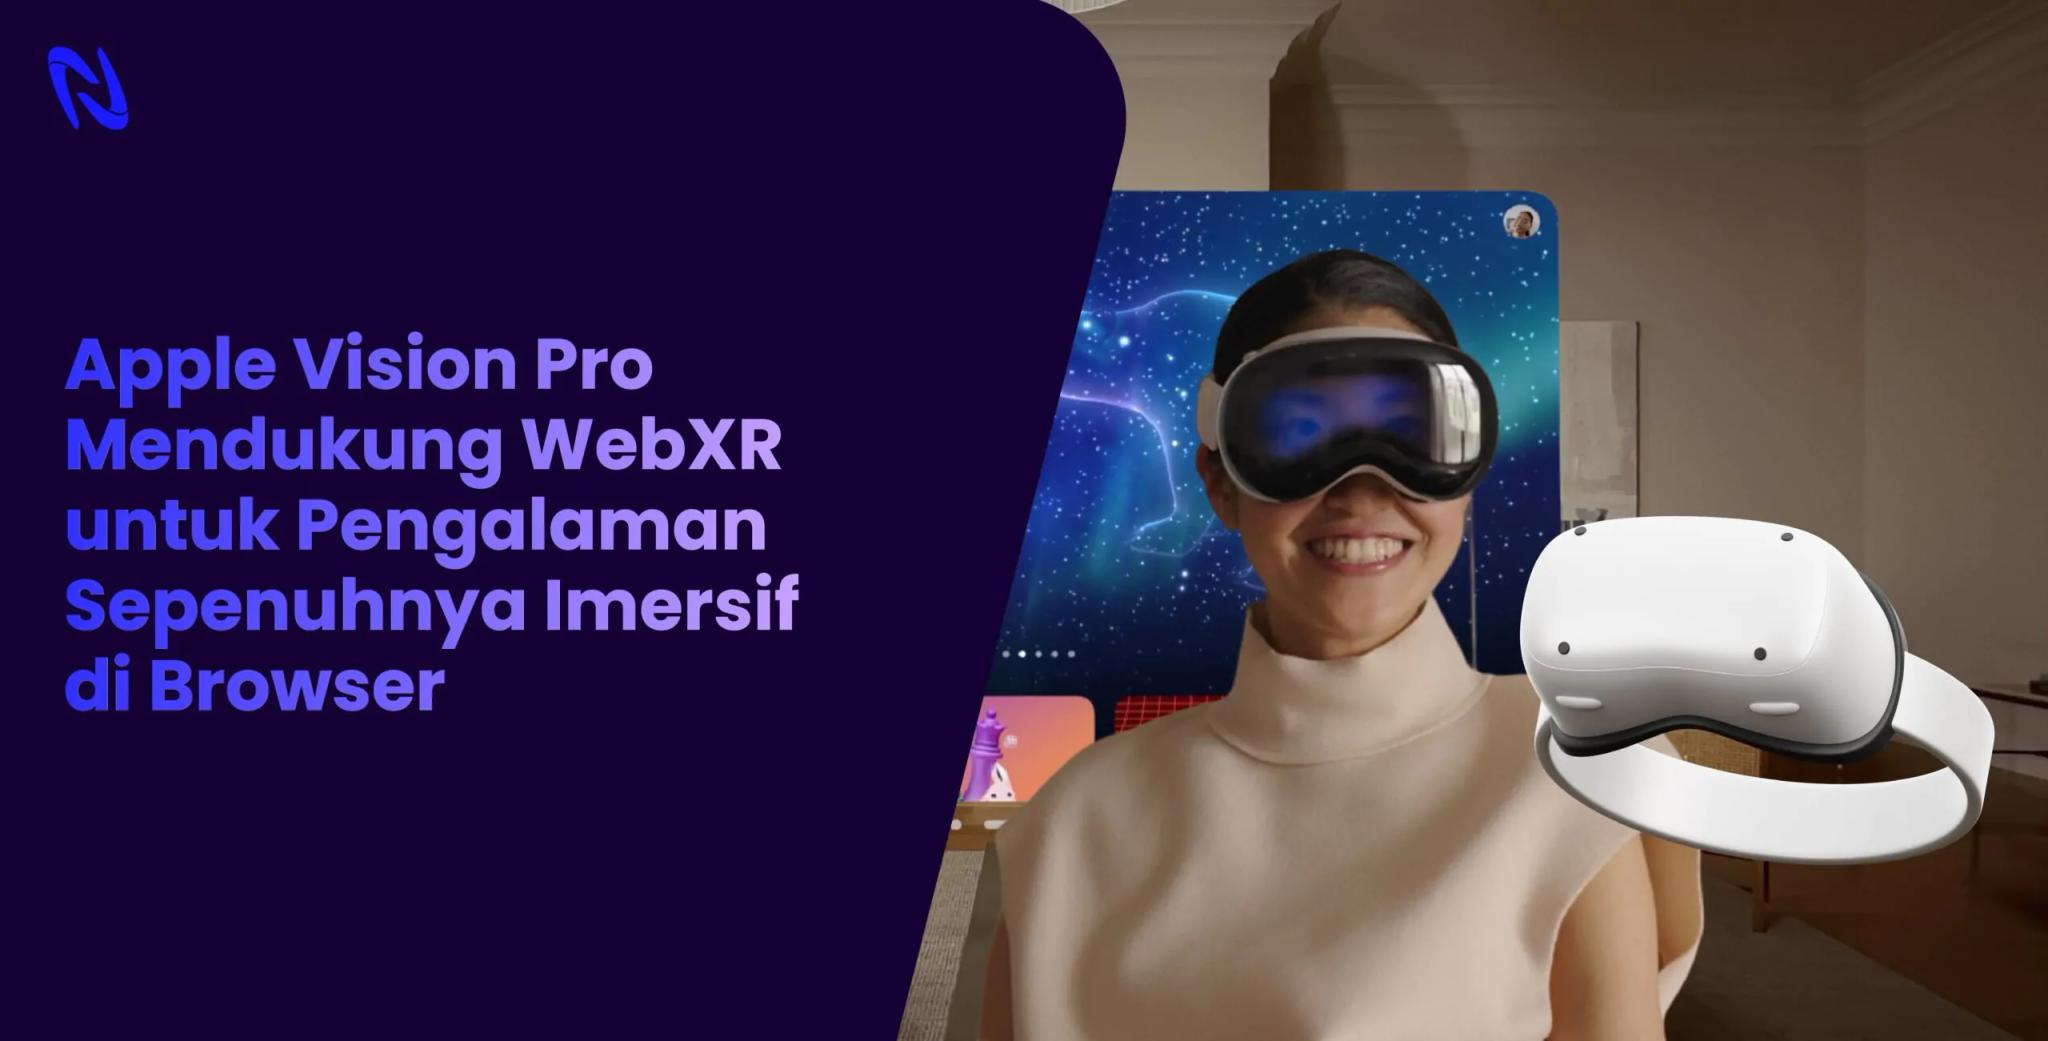 Apple Vision Pro Mendukung WebXR untuk Pengalaman Sepenuhnya Imersif di Browser